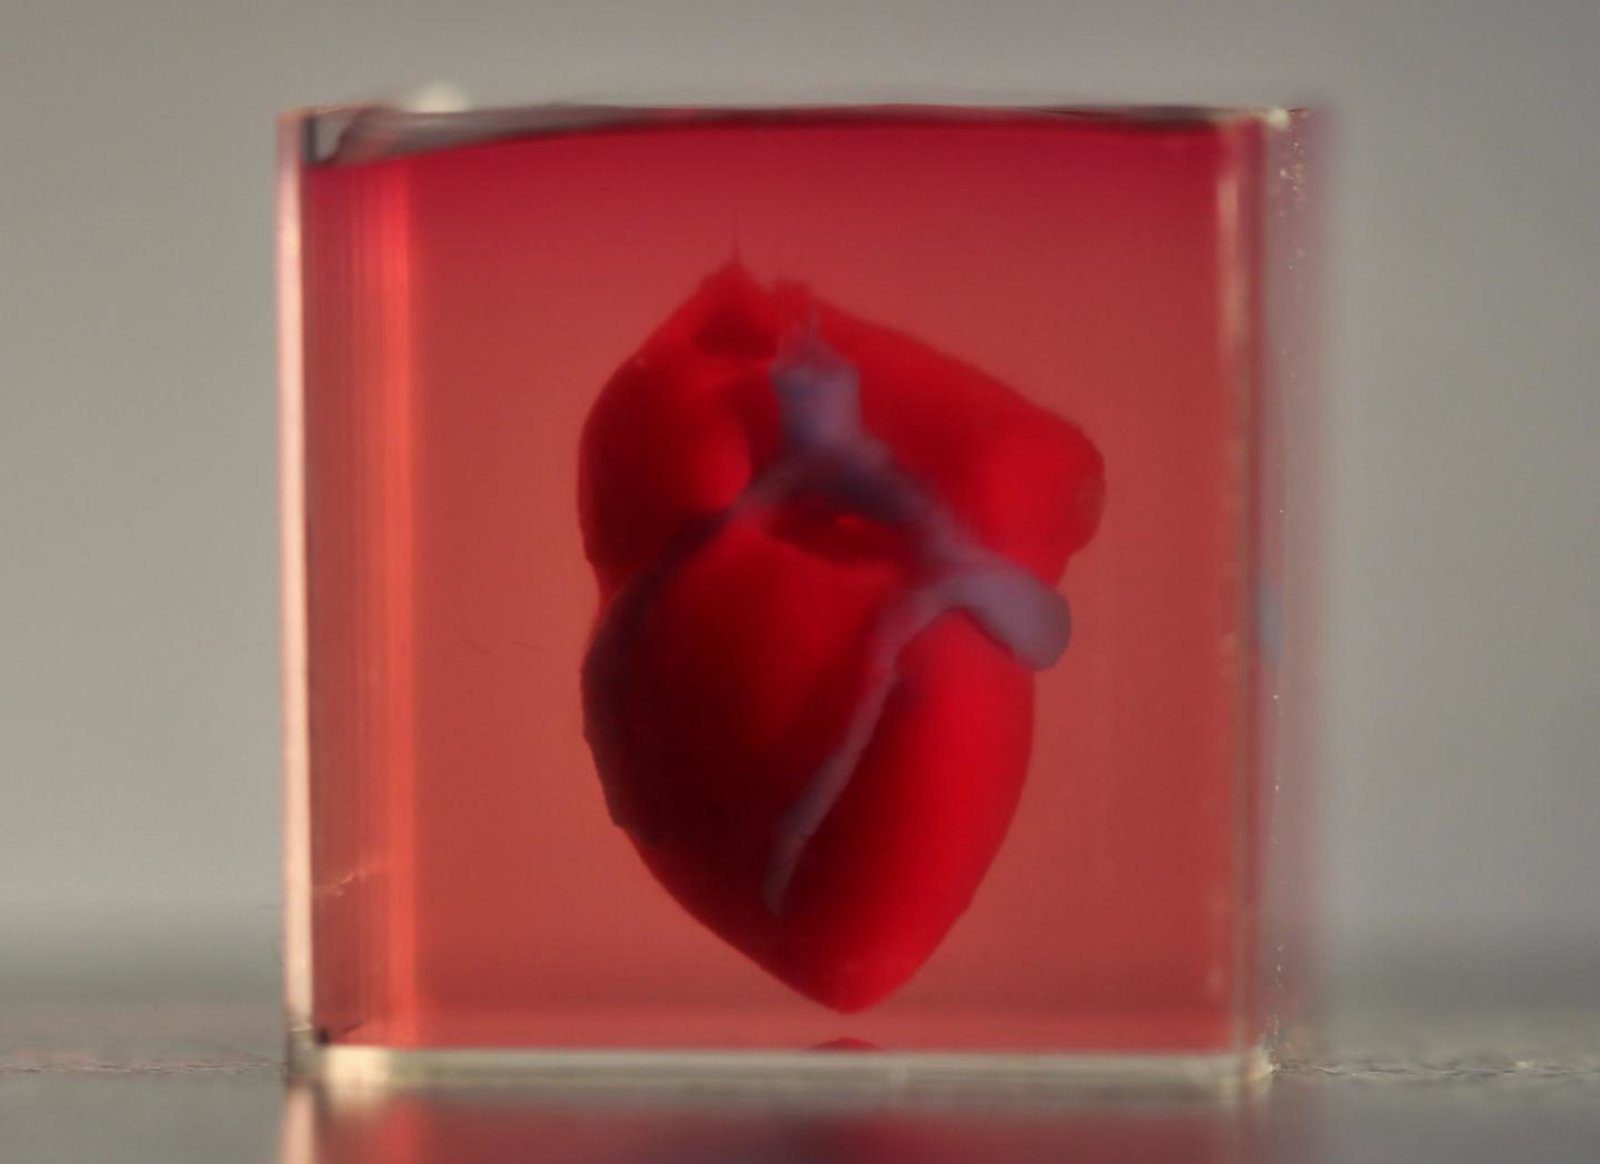 Scientist 3D Print Heart Using Patient’s Cells